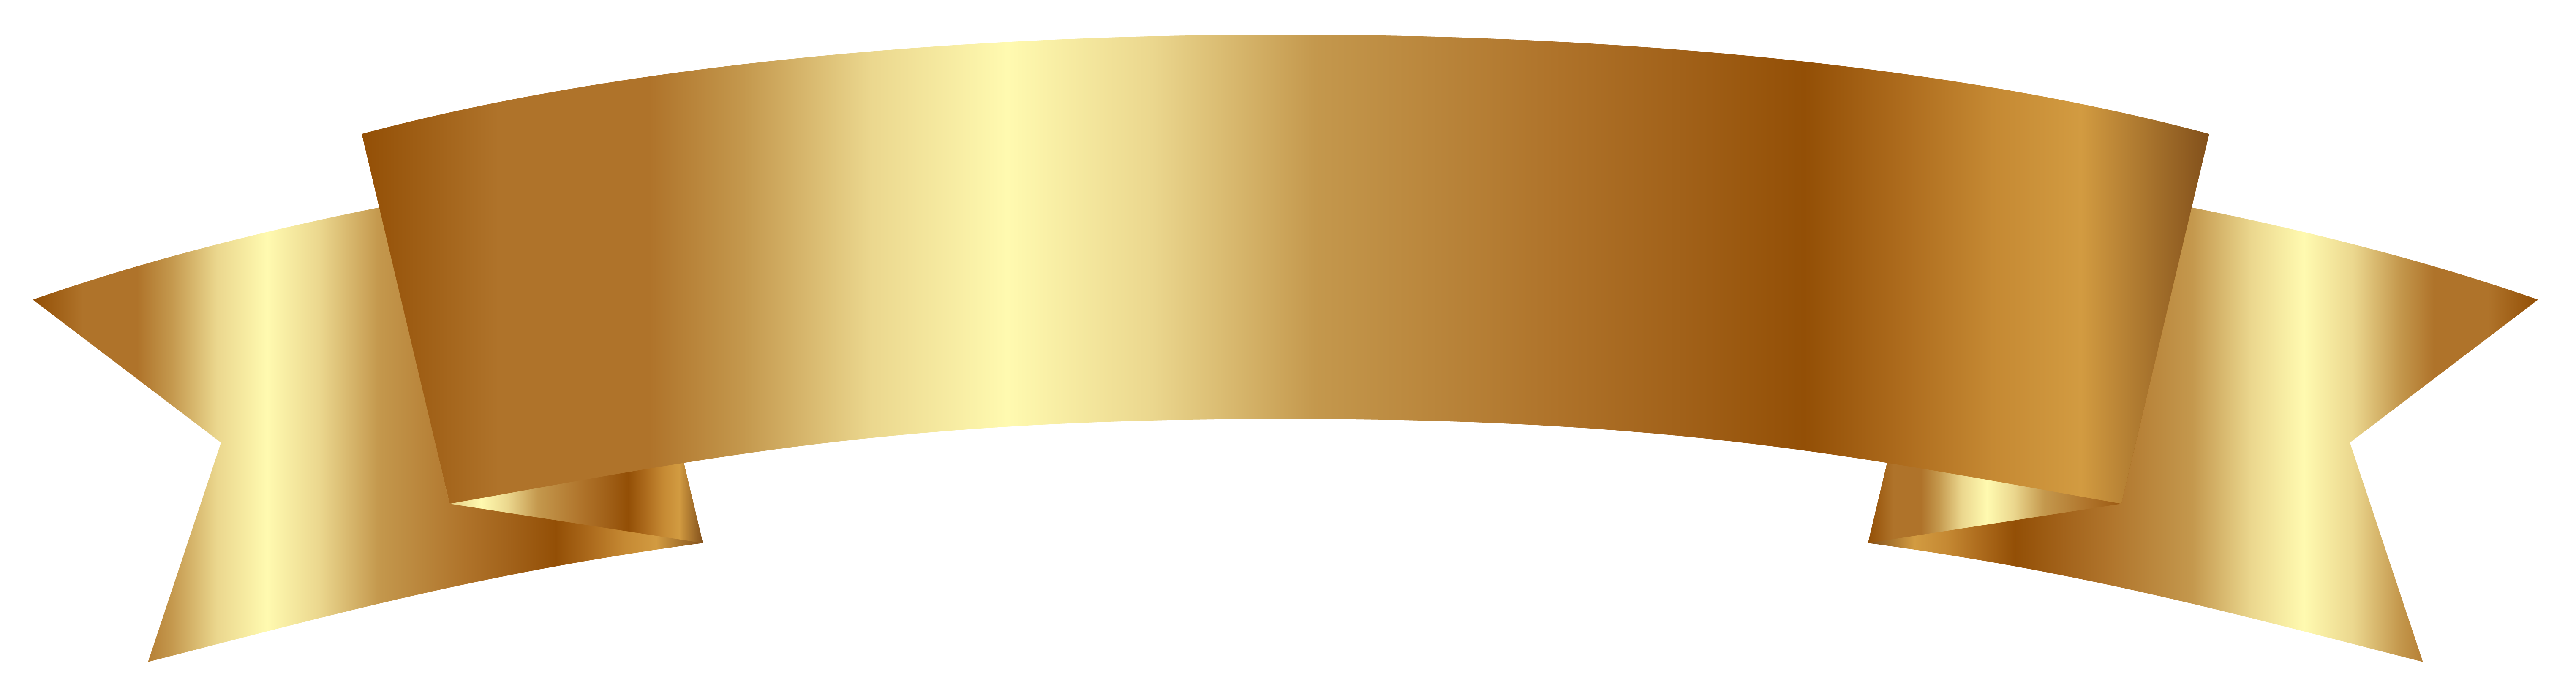 Golden Ribbon Banner PNG Image